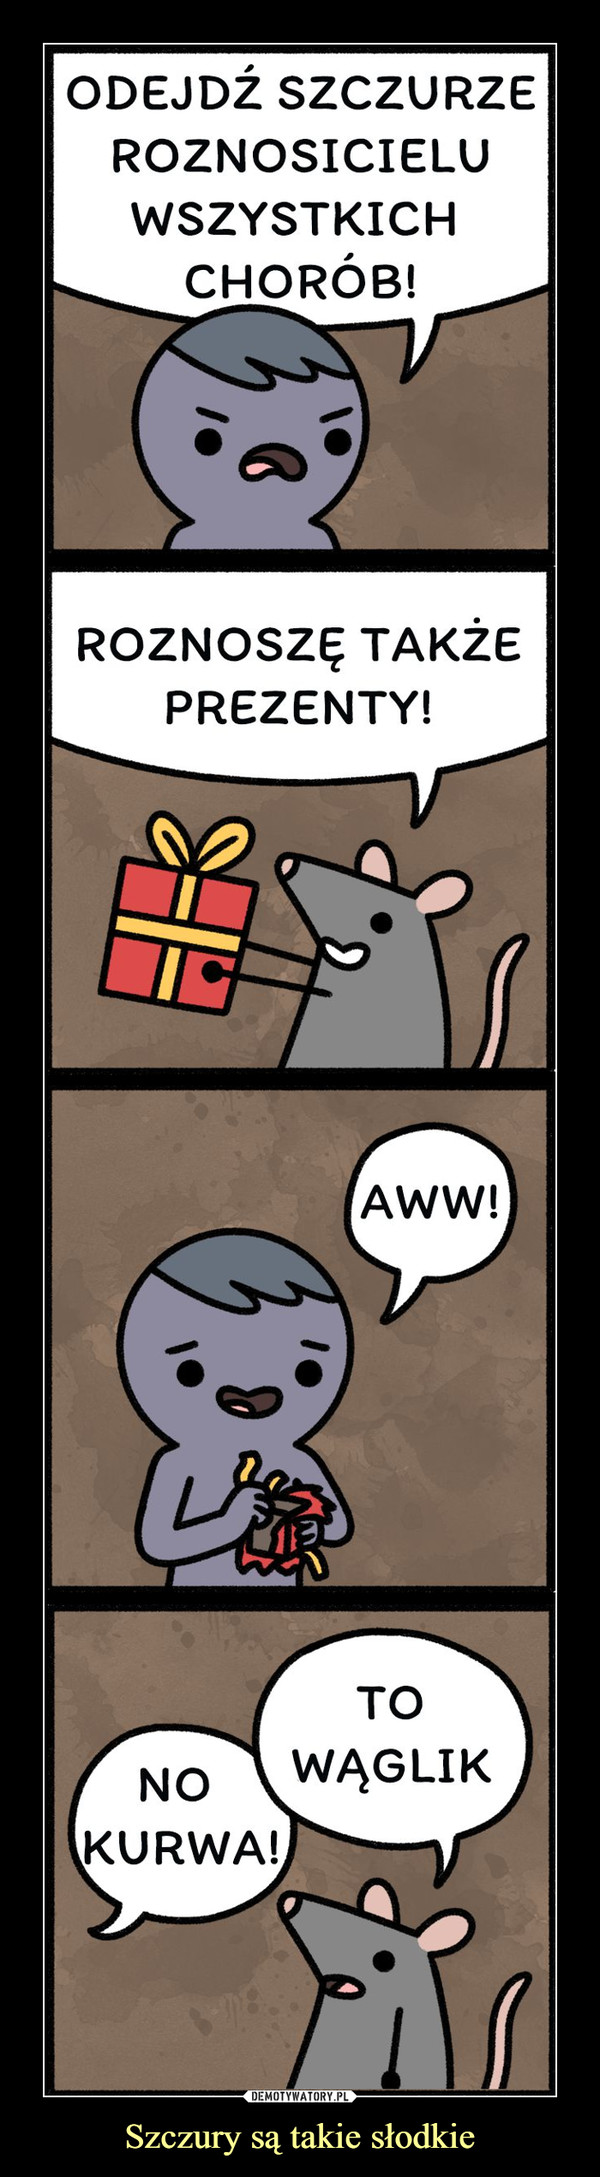 Szczury są takie słodkie